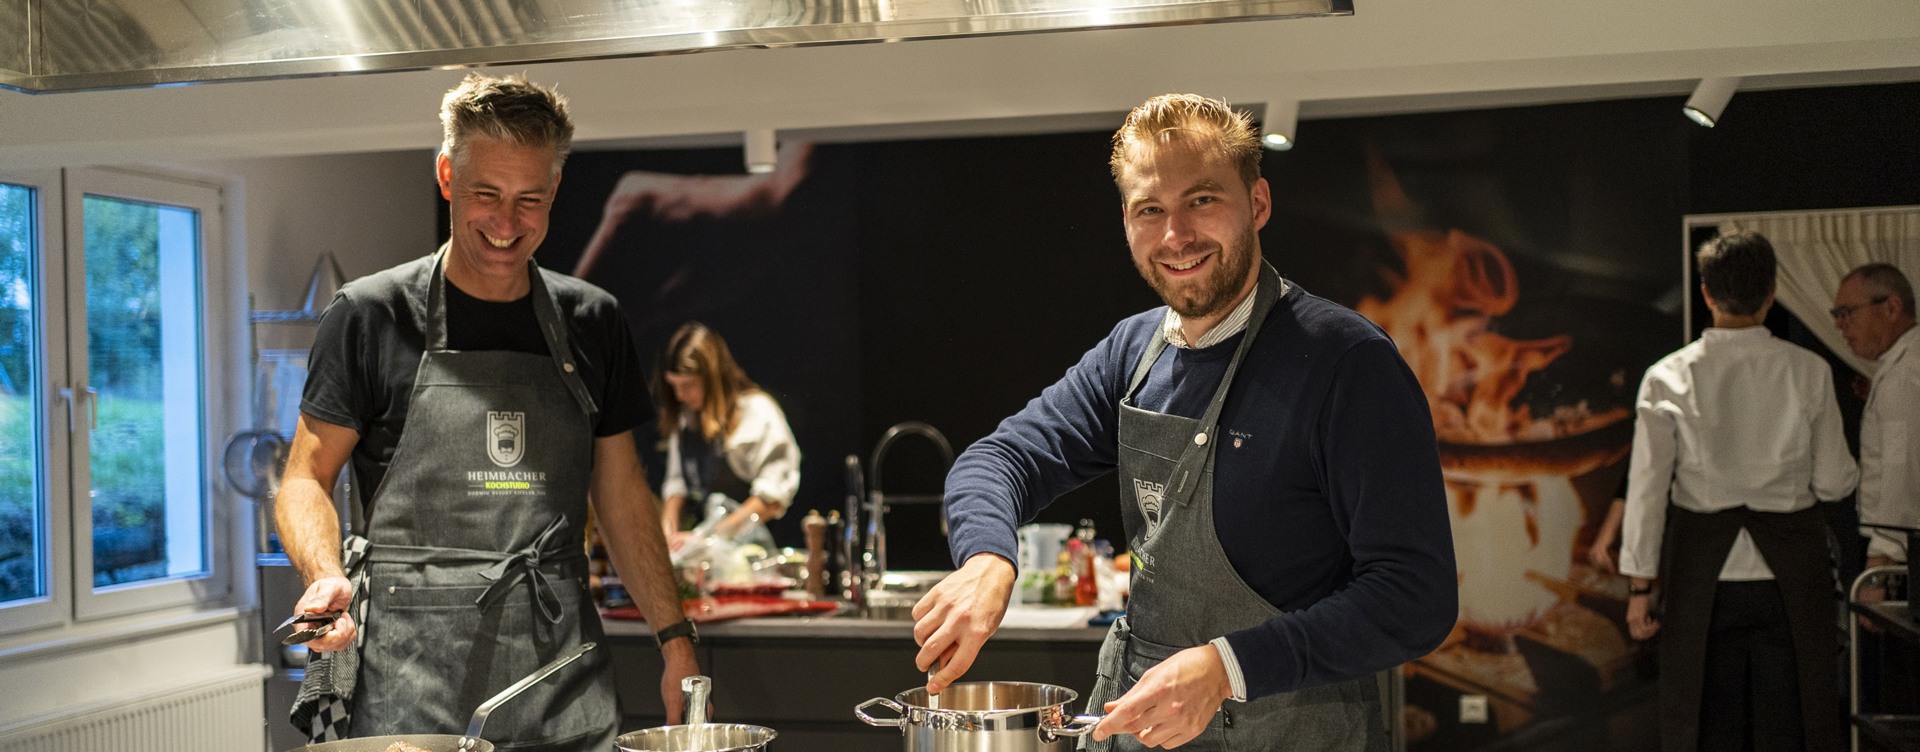 Beleef een gezellige kookworkshop
als teambuilding activiteit in de Eifel